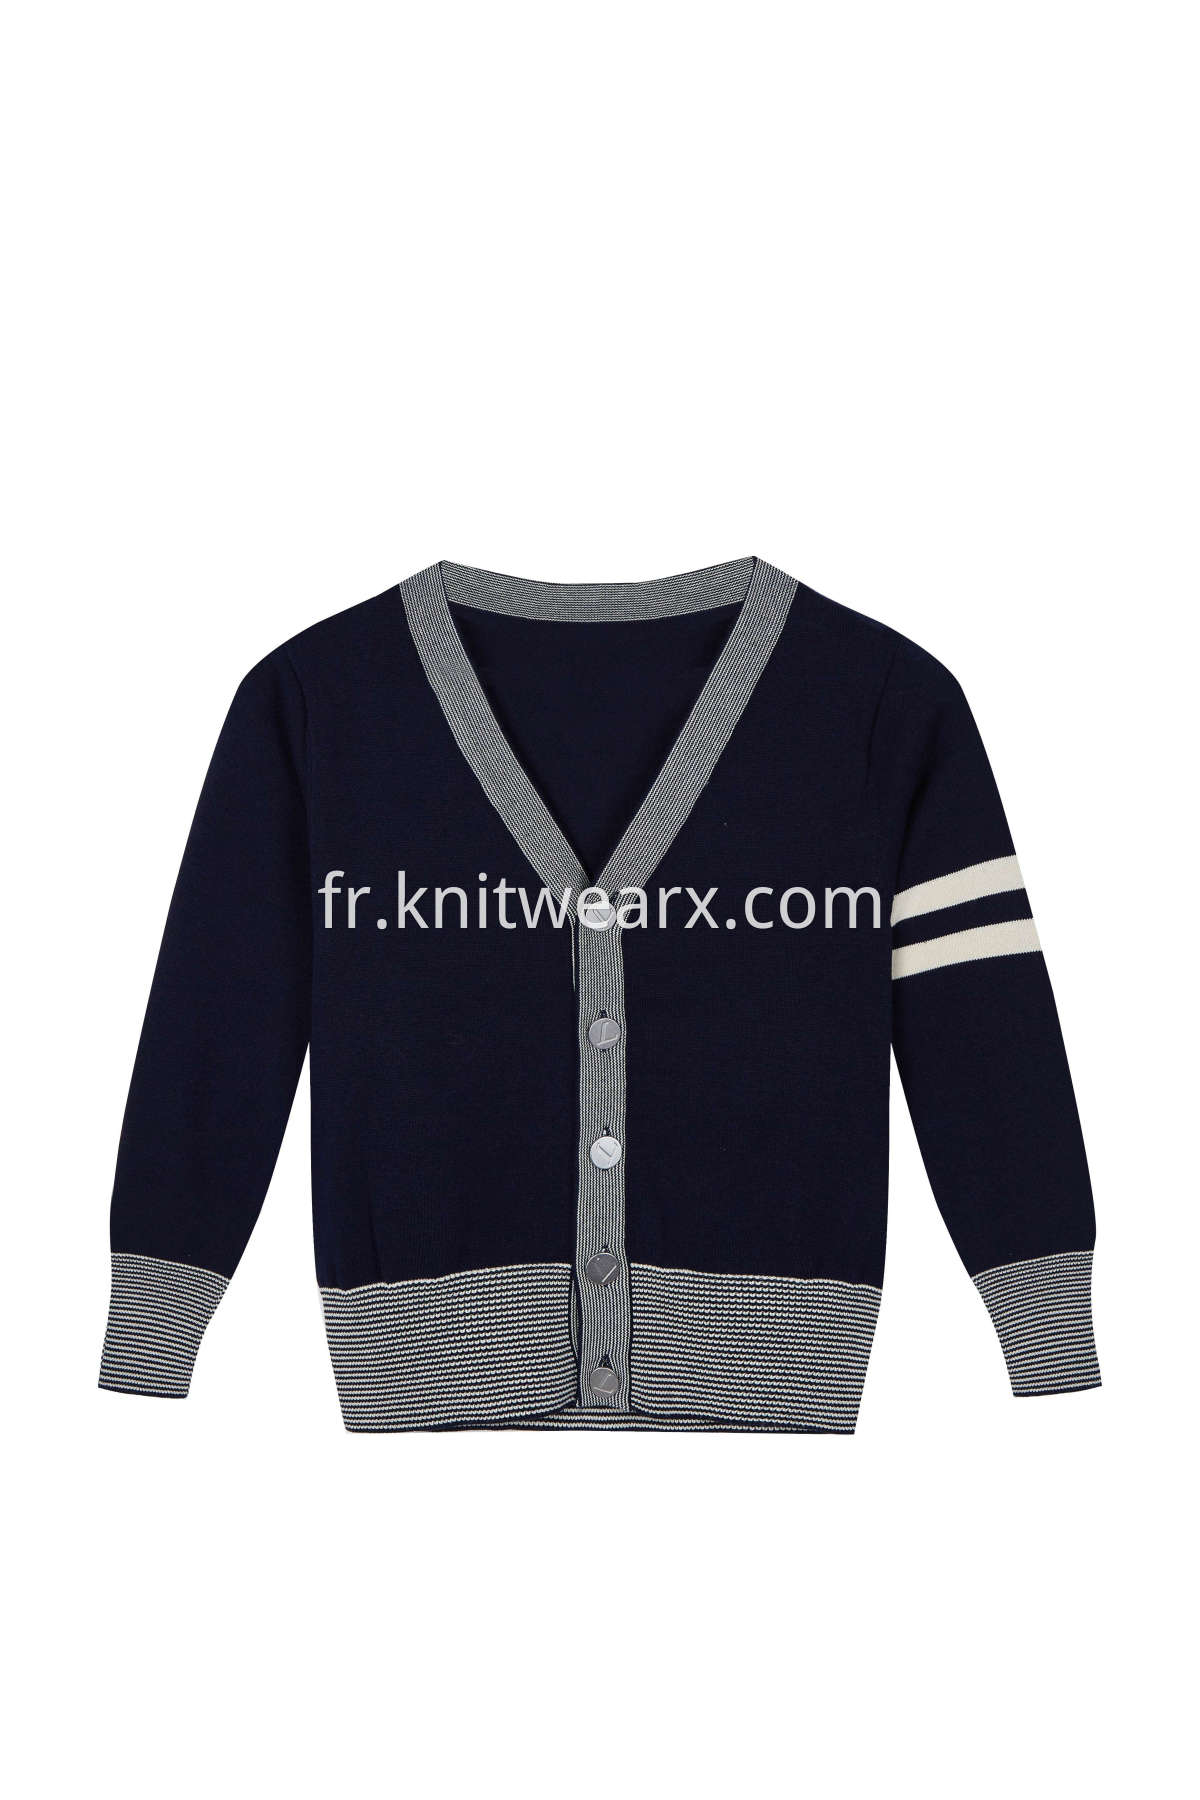 Boy's Sweater Casual Vest Cotton V-Neck School Uniform Button Cardigan